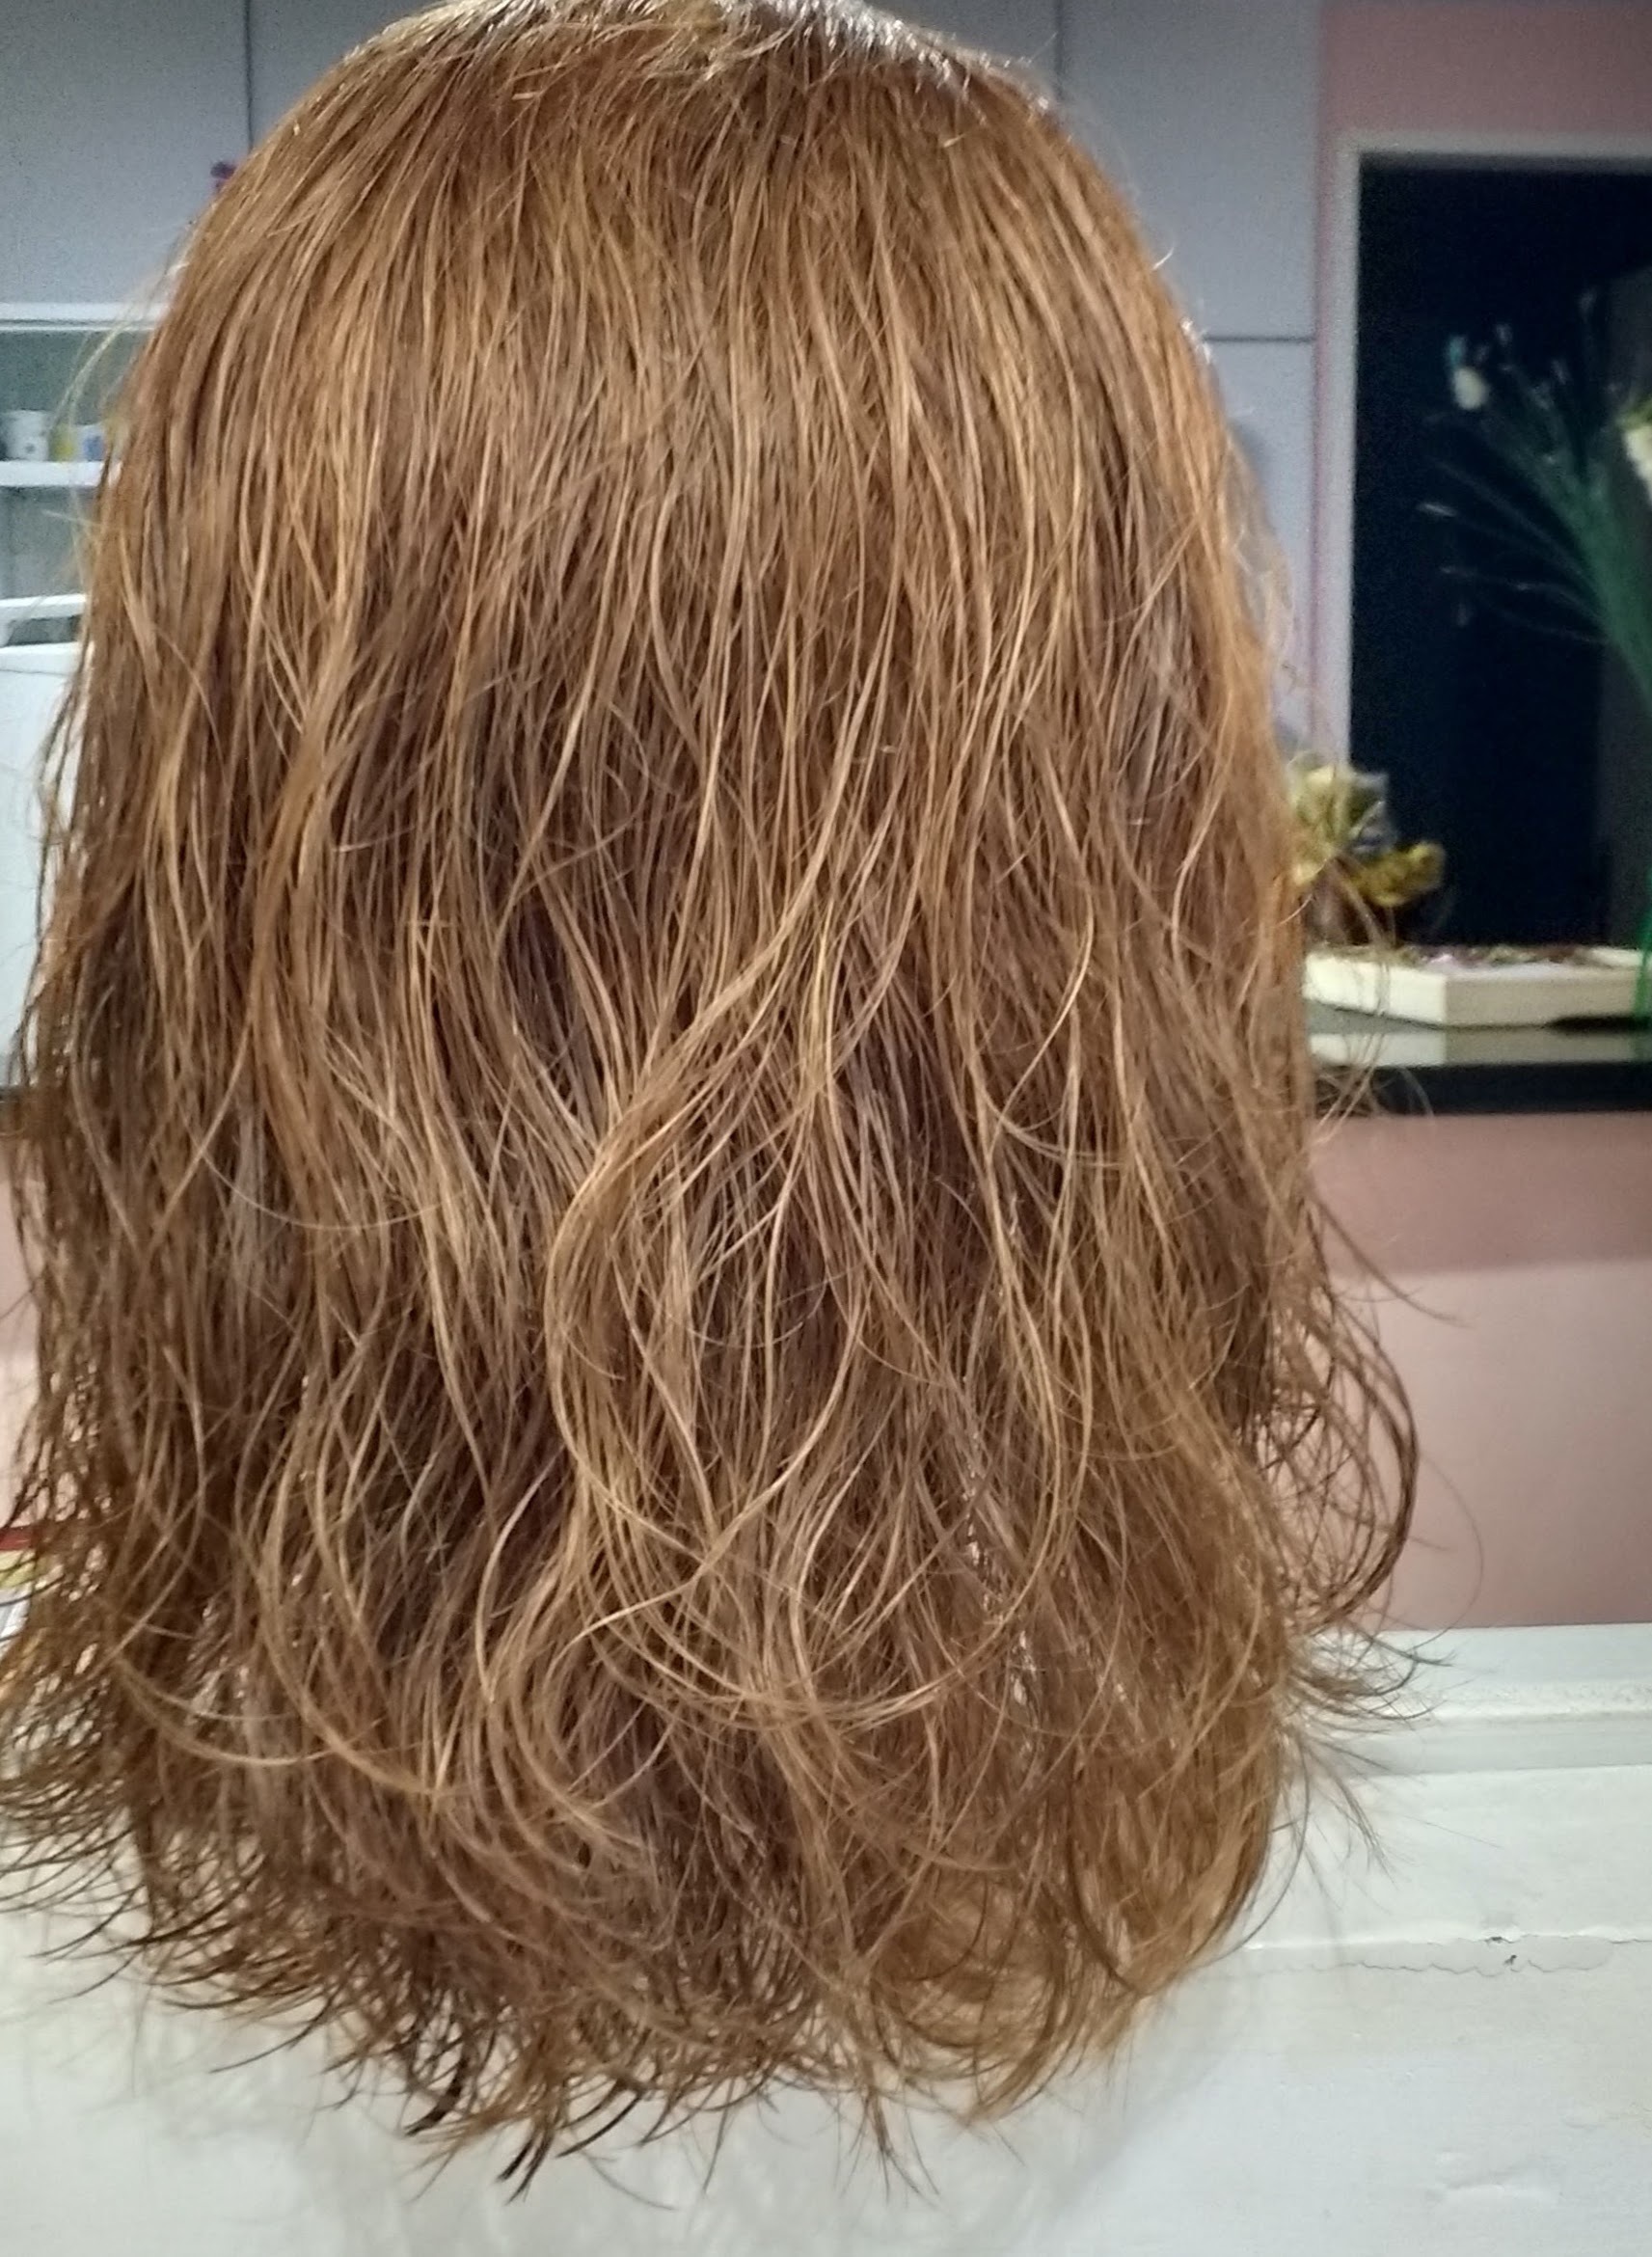 Corte com texturização slice cut cabelo estudante (cabeleireiro)